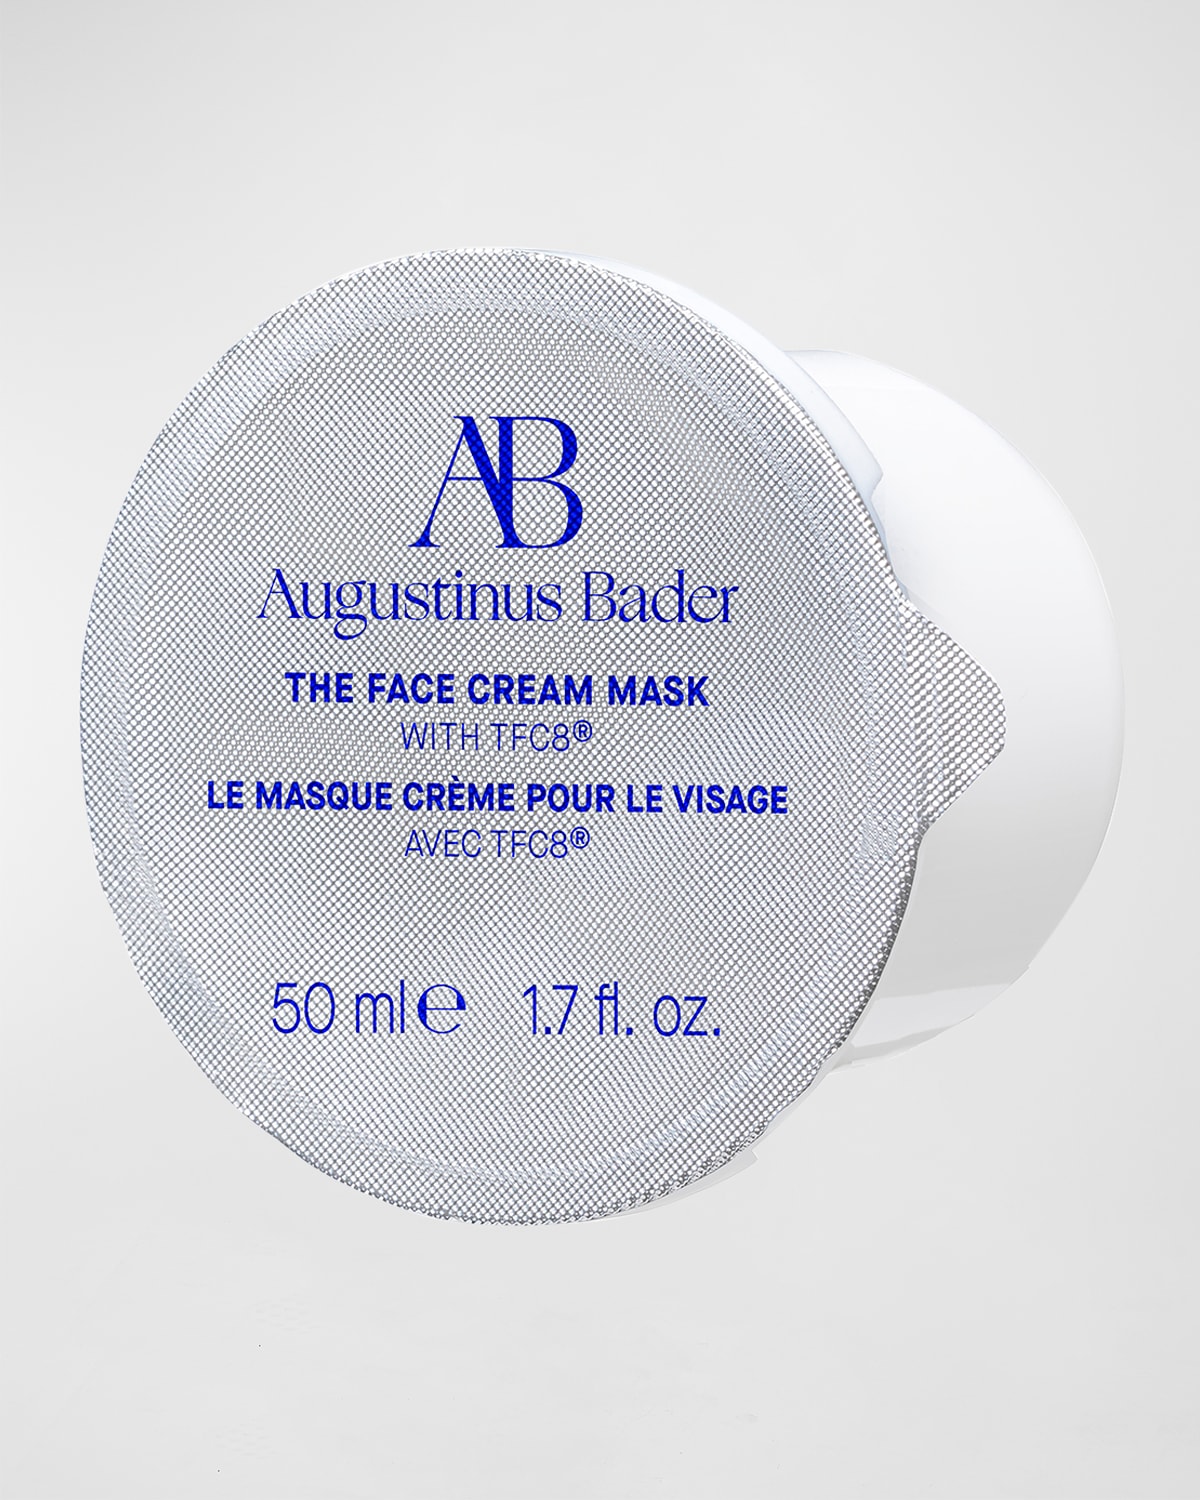 The Face Cream Mask, 1.7 oz.